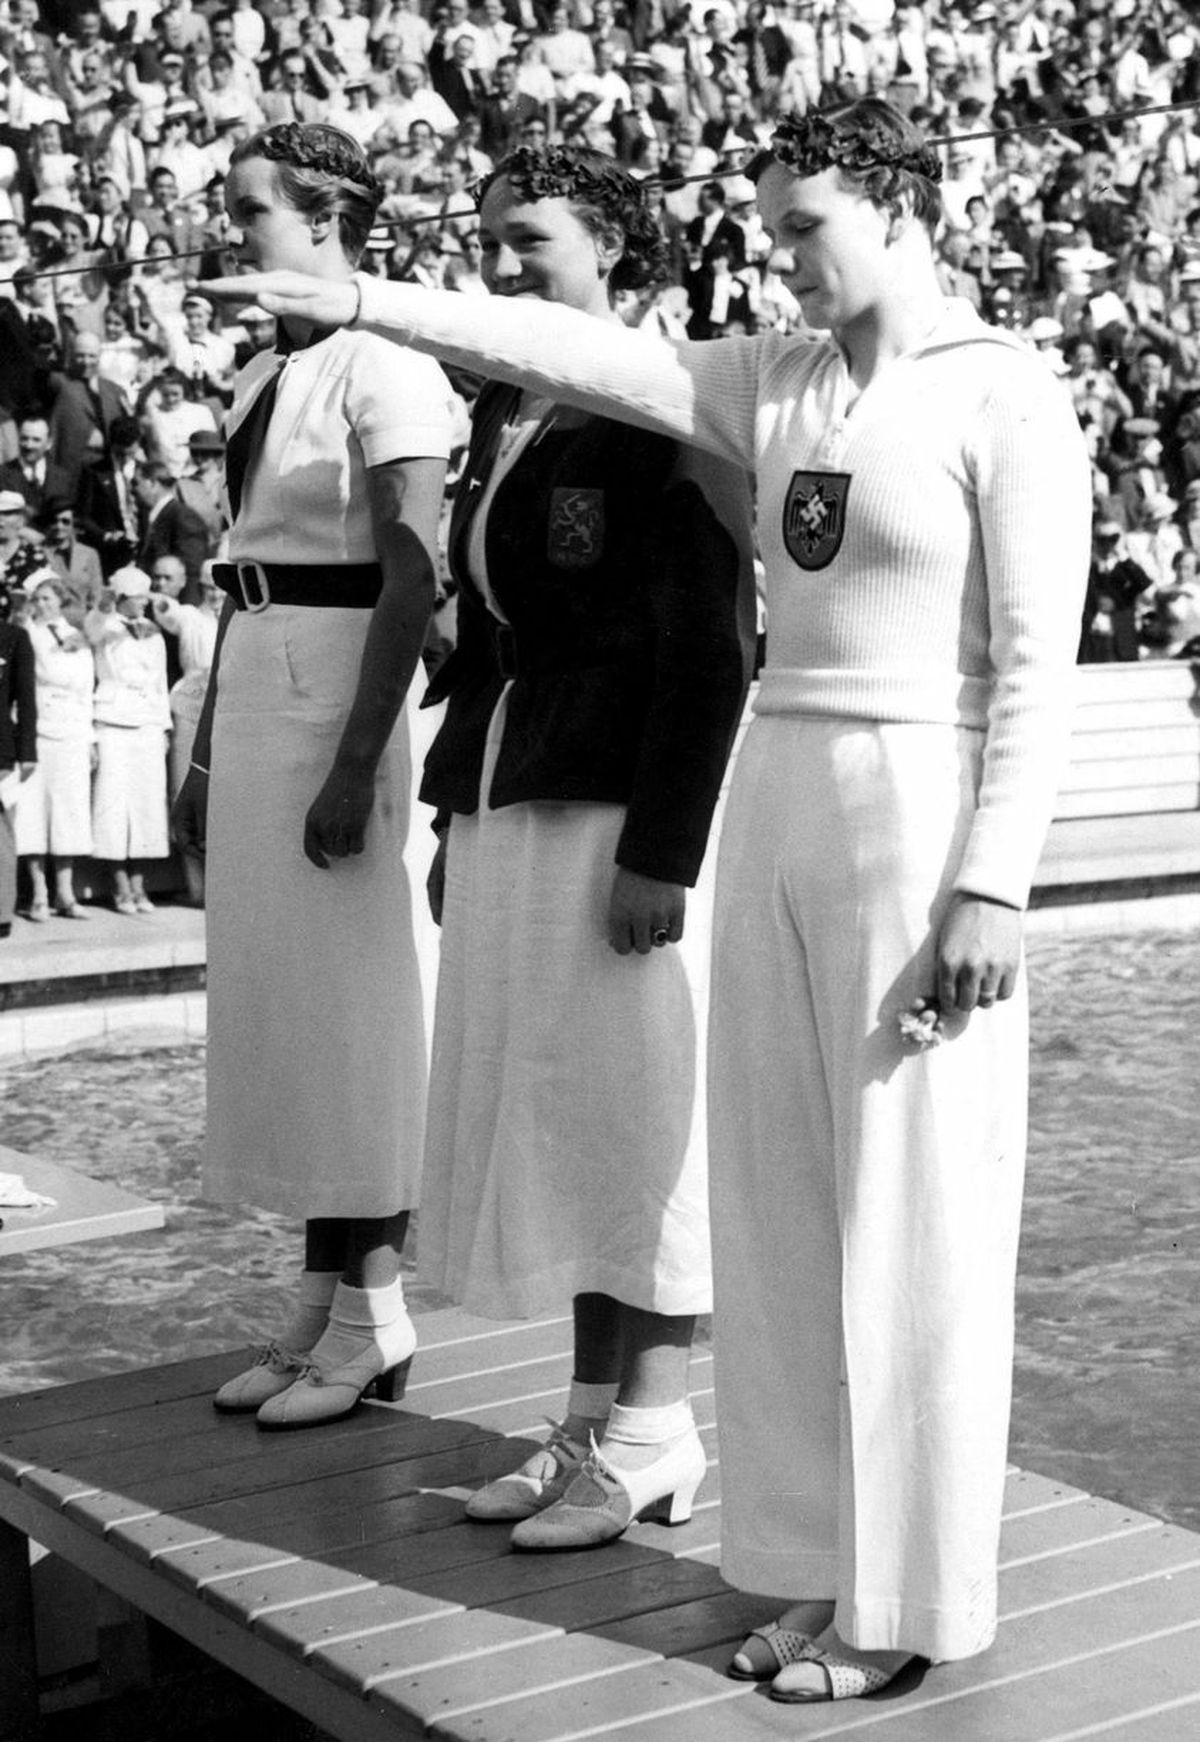 El podio de los 100 metros libre femenino de Berlín 1936, con Jeanette Campbell (plata) en el fondo; la holandesa Hendrika Wilhelmina (Rie) Mastenbroek (oro, en el centro), y la alemana Gisela Arendt (bronce, en primer plano).